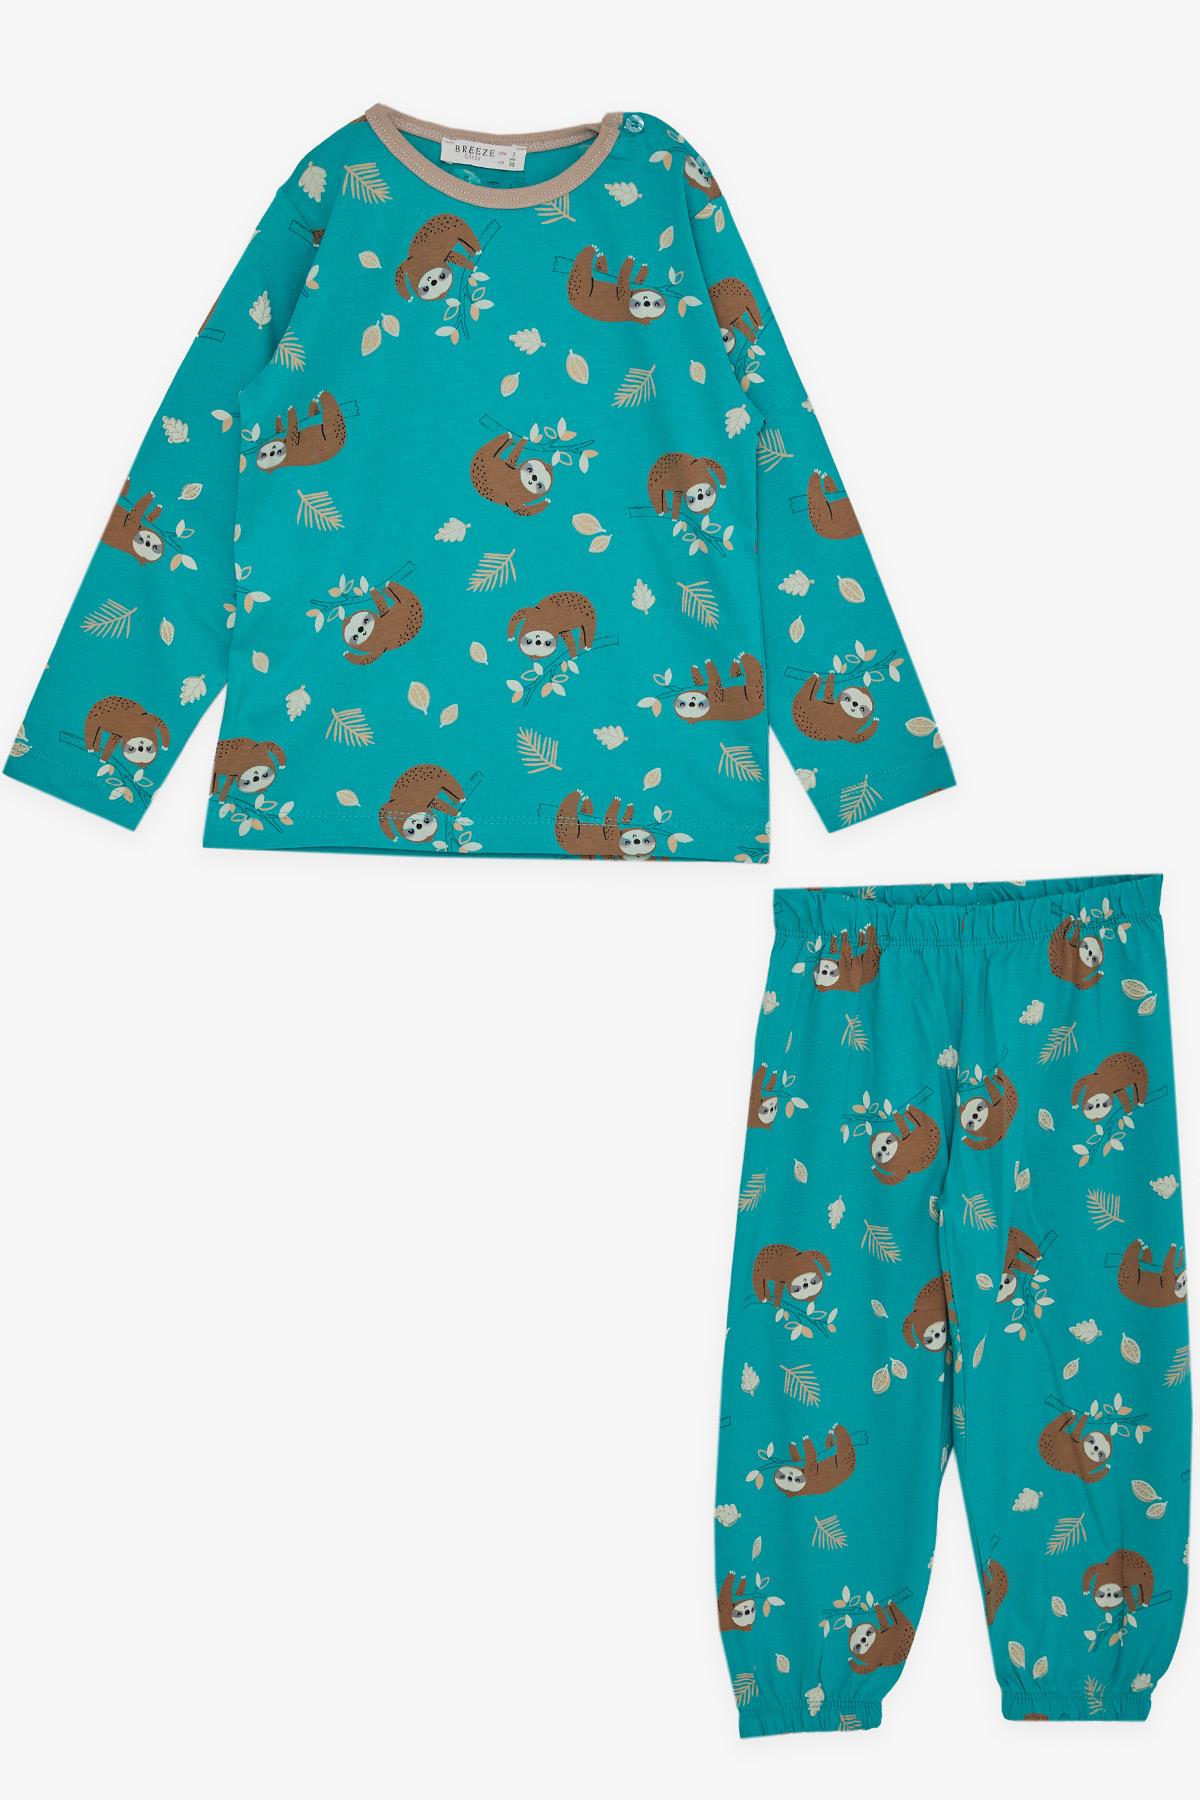 Kız Çocuk Pijama Takımı Tembel Hayvancık Desenli Yeşil 1-3 Yaş - Eğlenceli Kız  Çocuk Pijamaları| Breeze